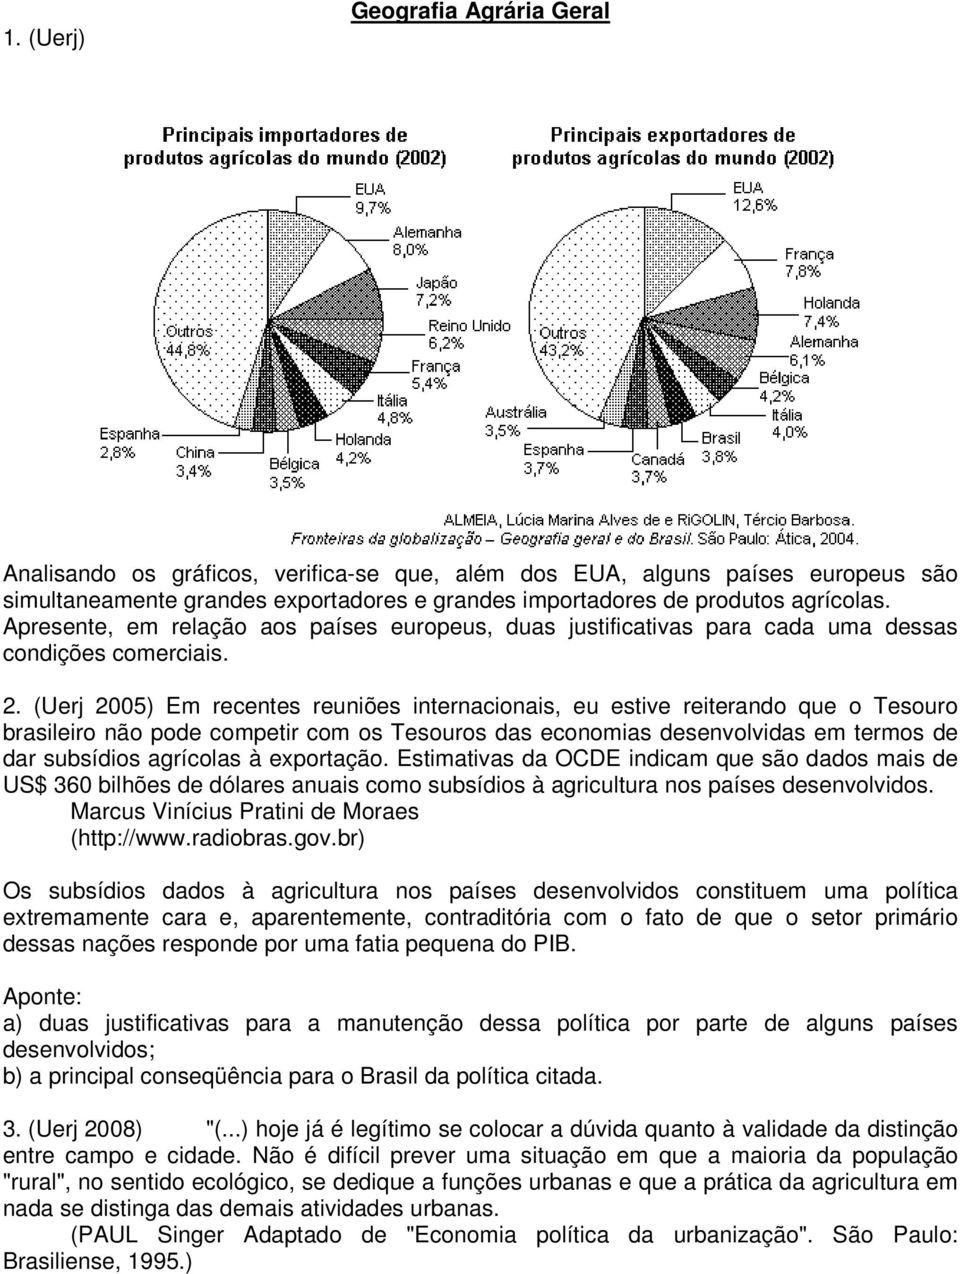 (Uerj 2005) Em recentes reuniões internacionais, eu estive reiterando que o Tesouro brasileiro não pode competir com os Tesouros das economias desenvolvidas em termos de dar subsídios agrícolas à